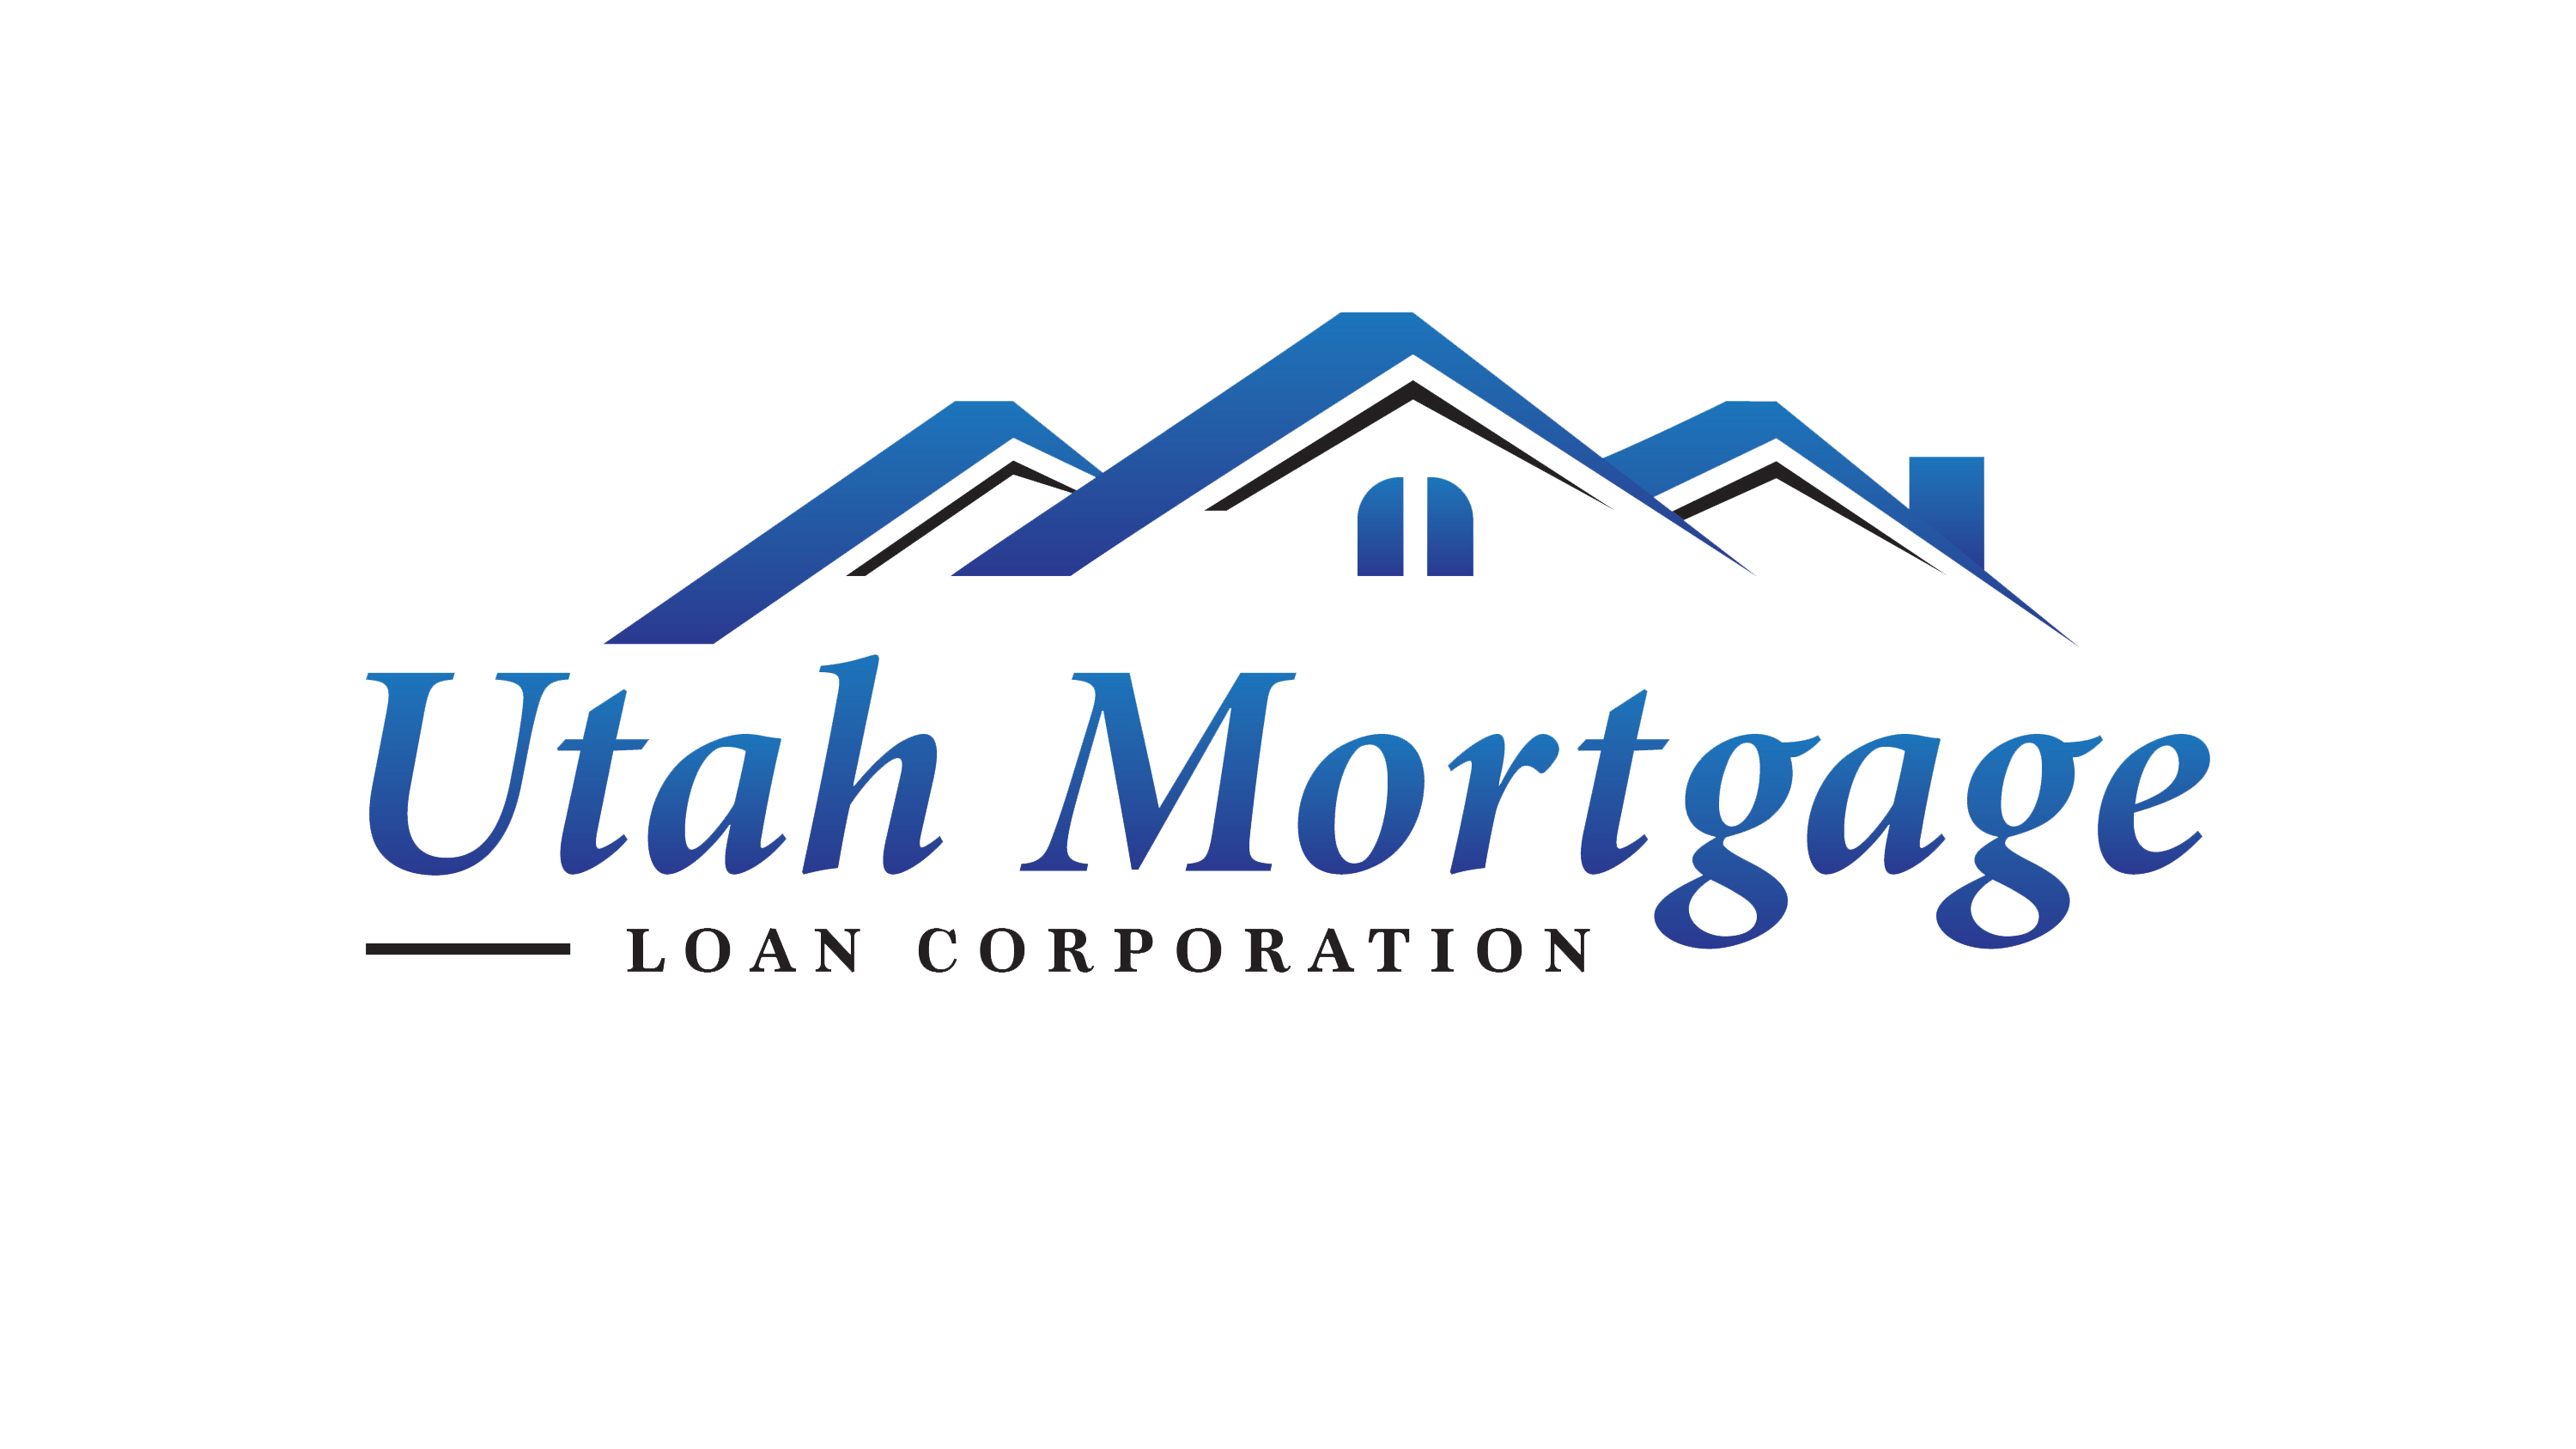 Loan Company Logo - Utah Mortgage Loan Corporation - The Original Utah Lender